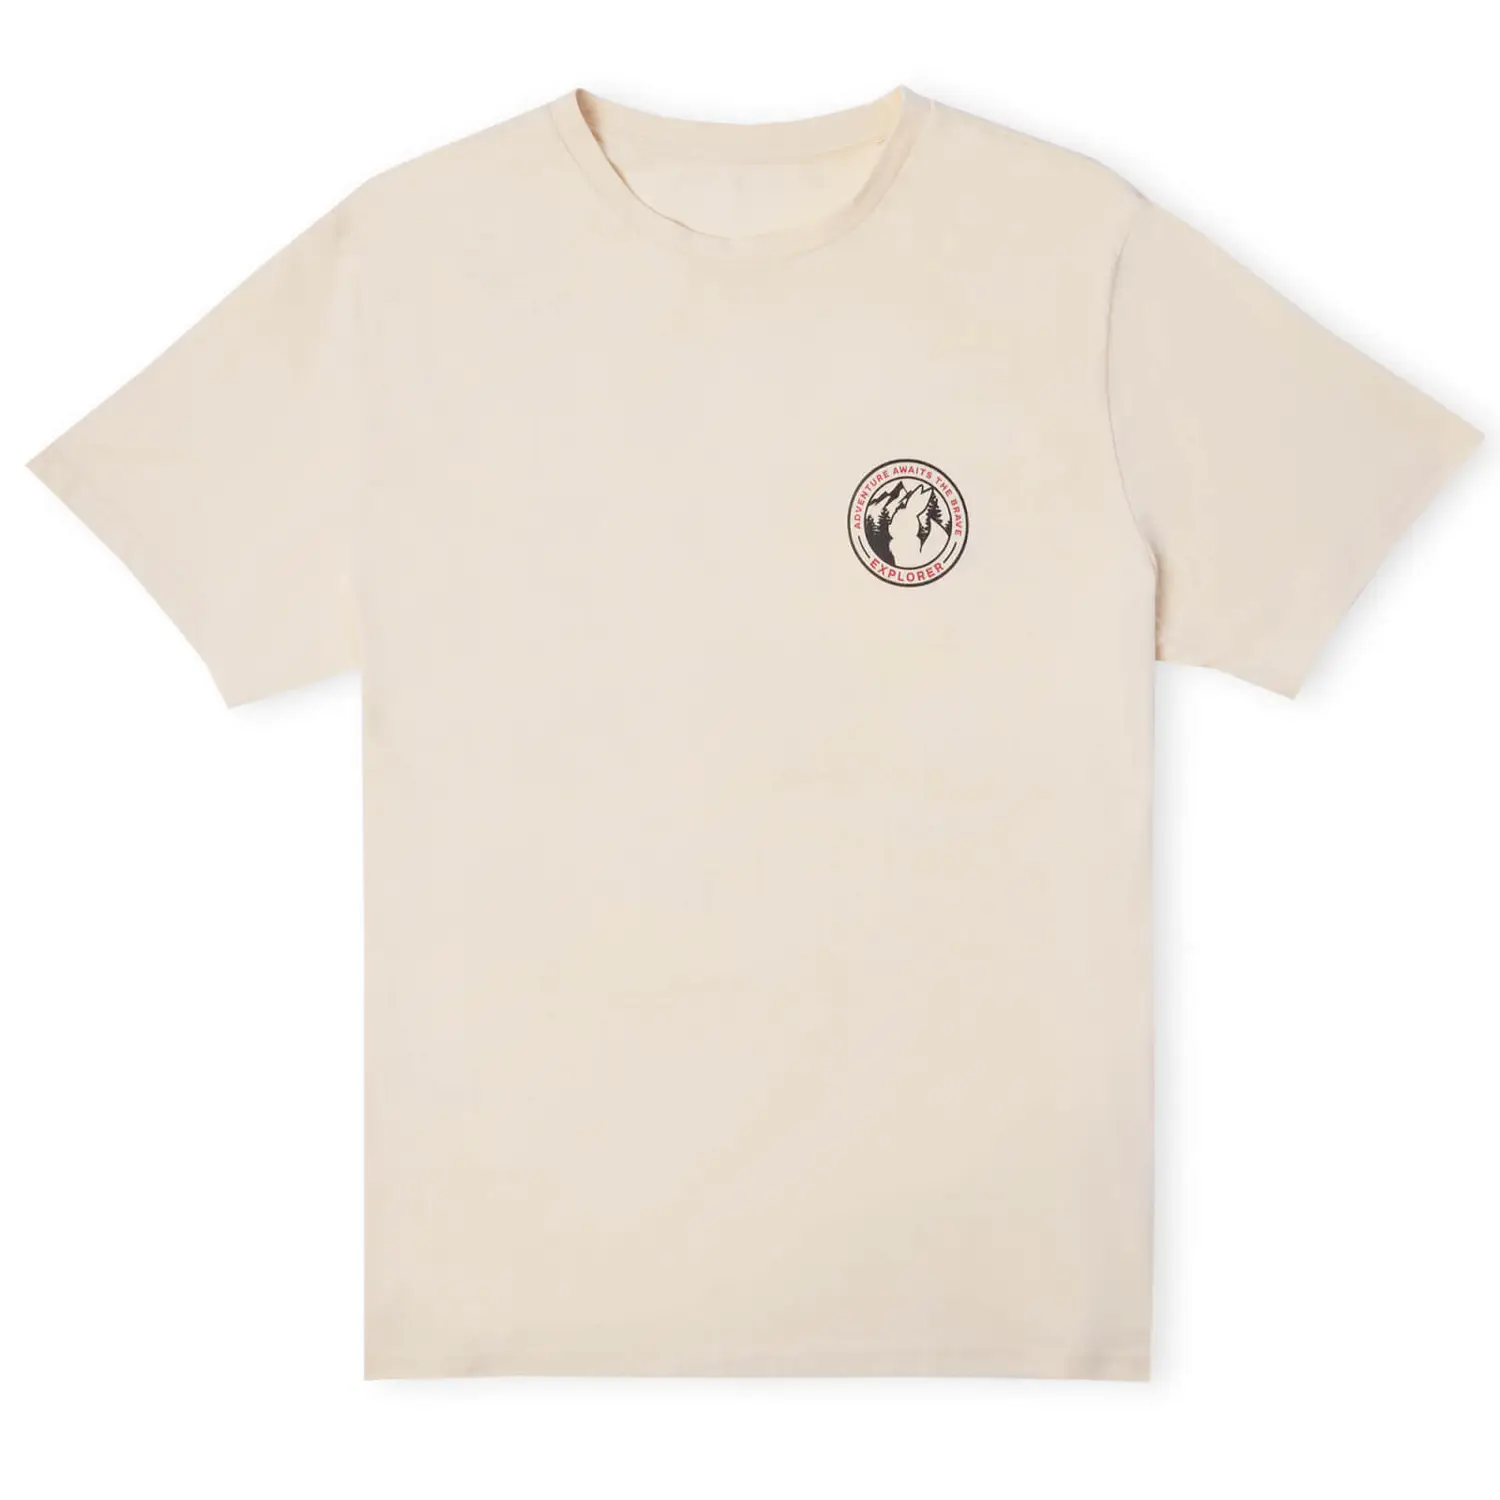 Tee-shirt unisexe crème Évoli - Pokémon Explorer